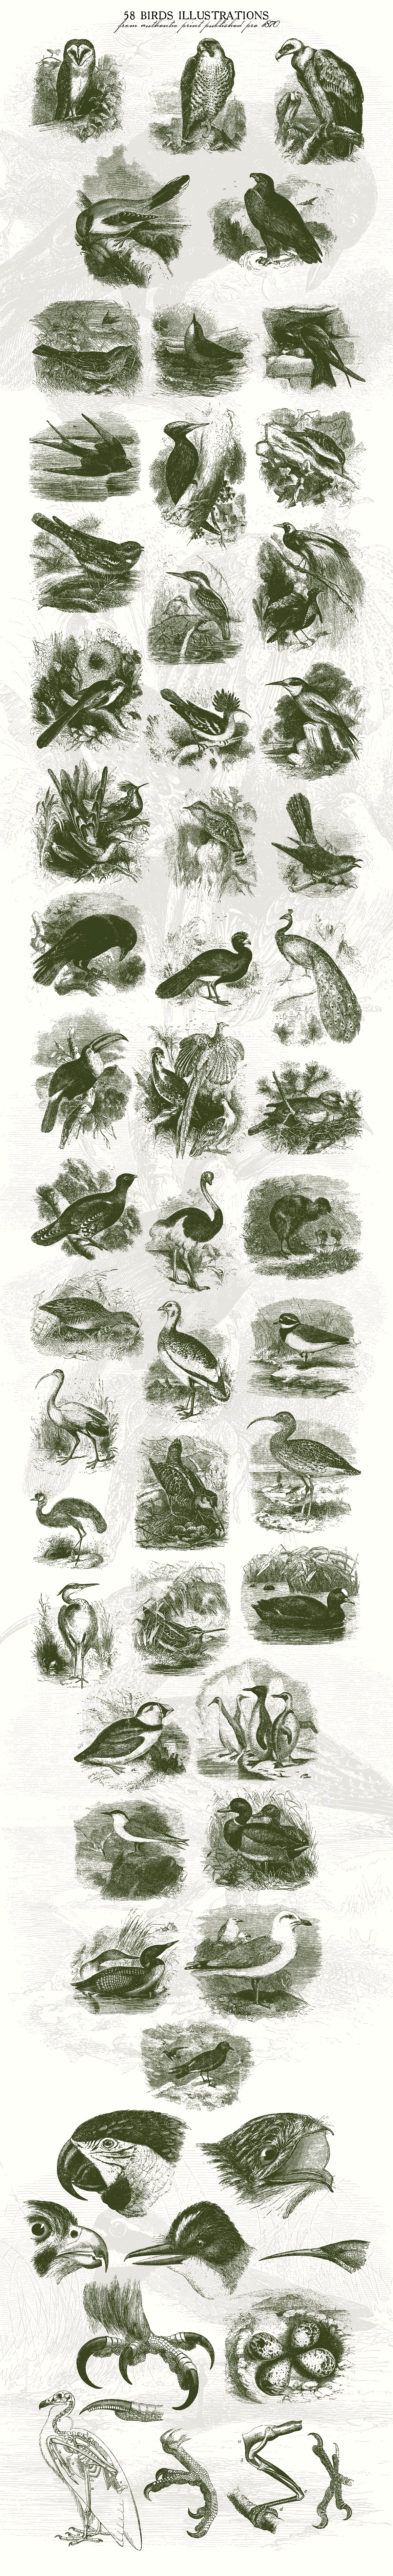 58款复古鸟类插画素材 58 Birds Illustrations插图(3)